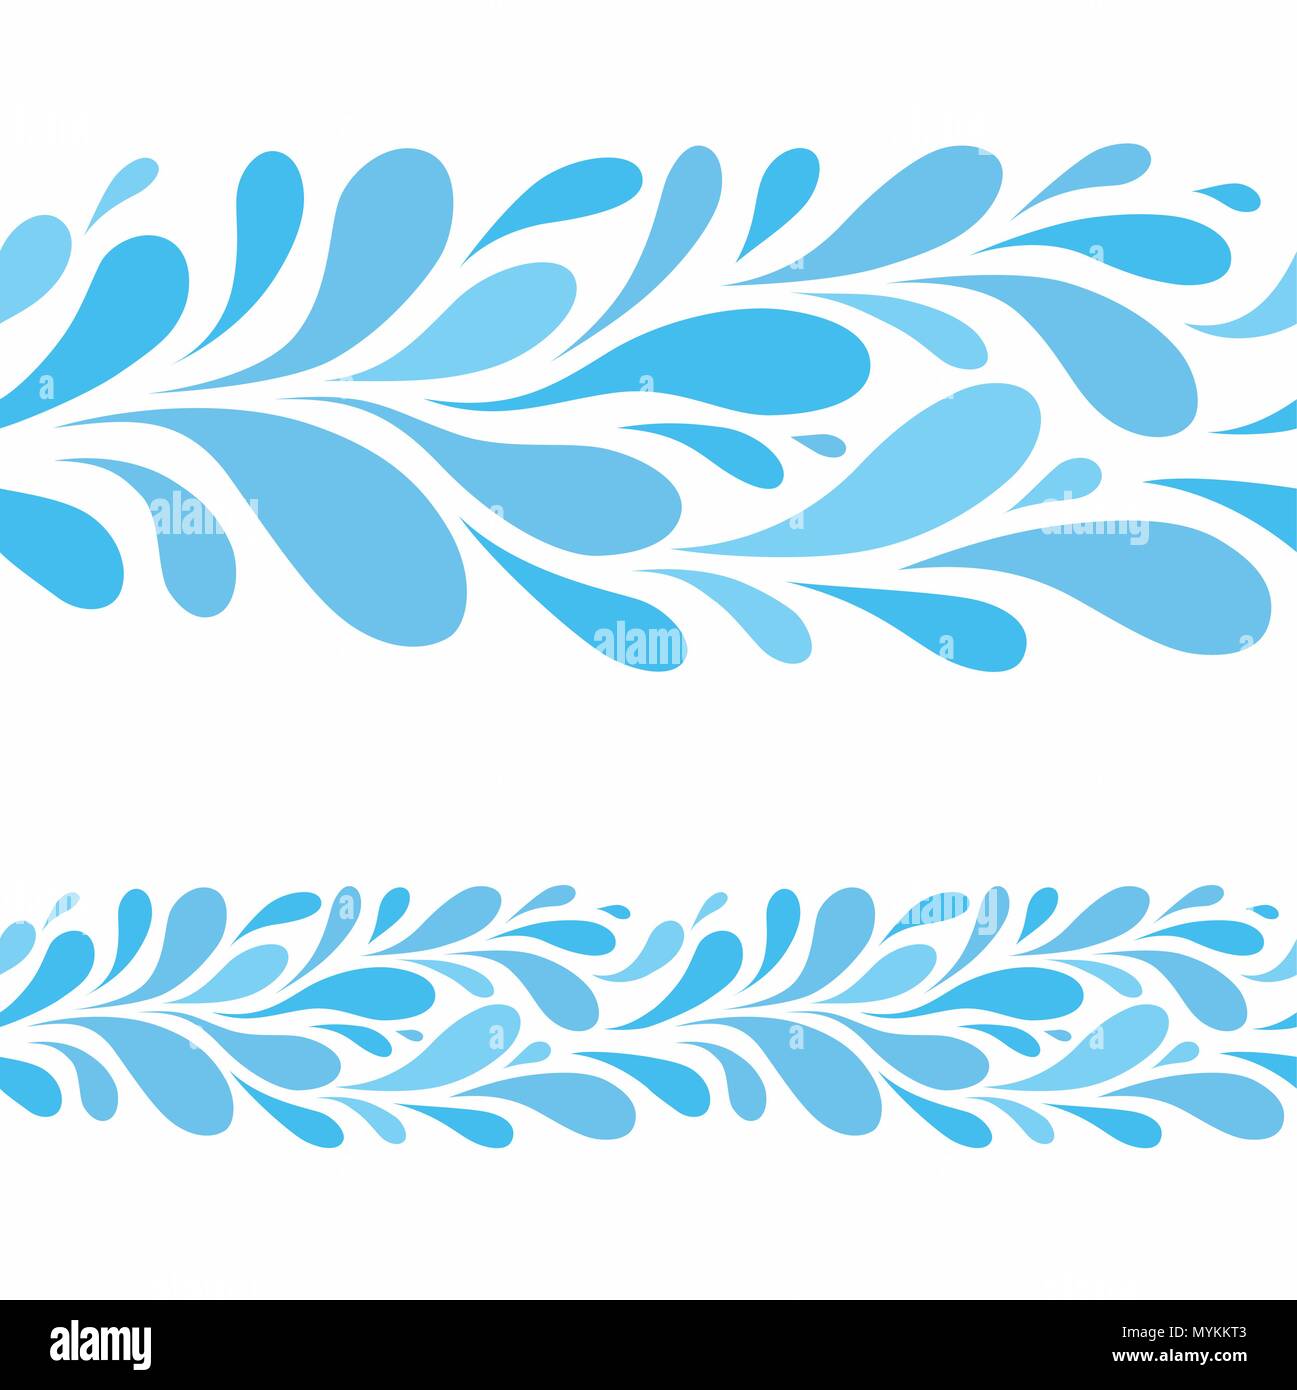 Goccia di acqua su sfondo bianco.stilizzata seamless pattern di gocce di blu Illustrazione Vettoriale